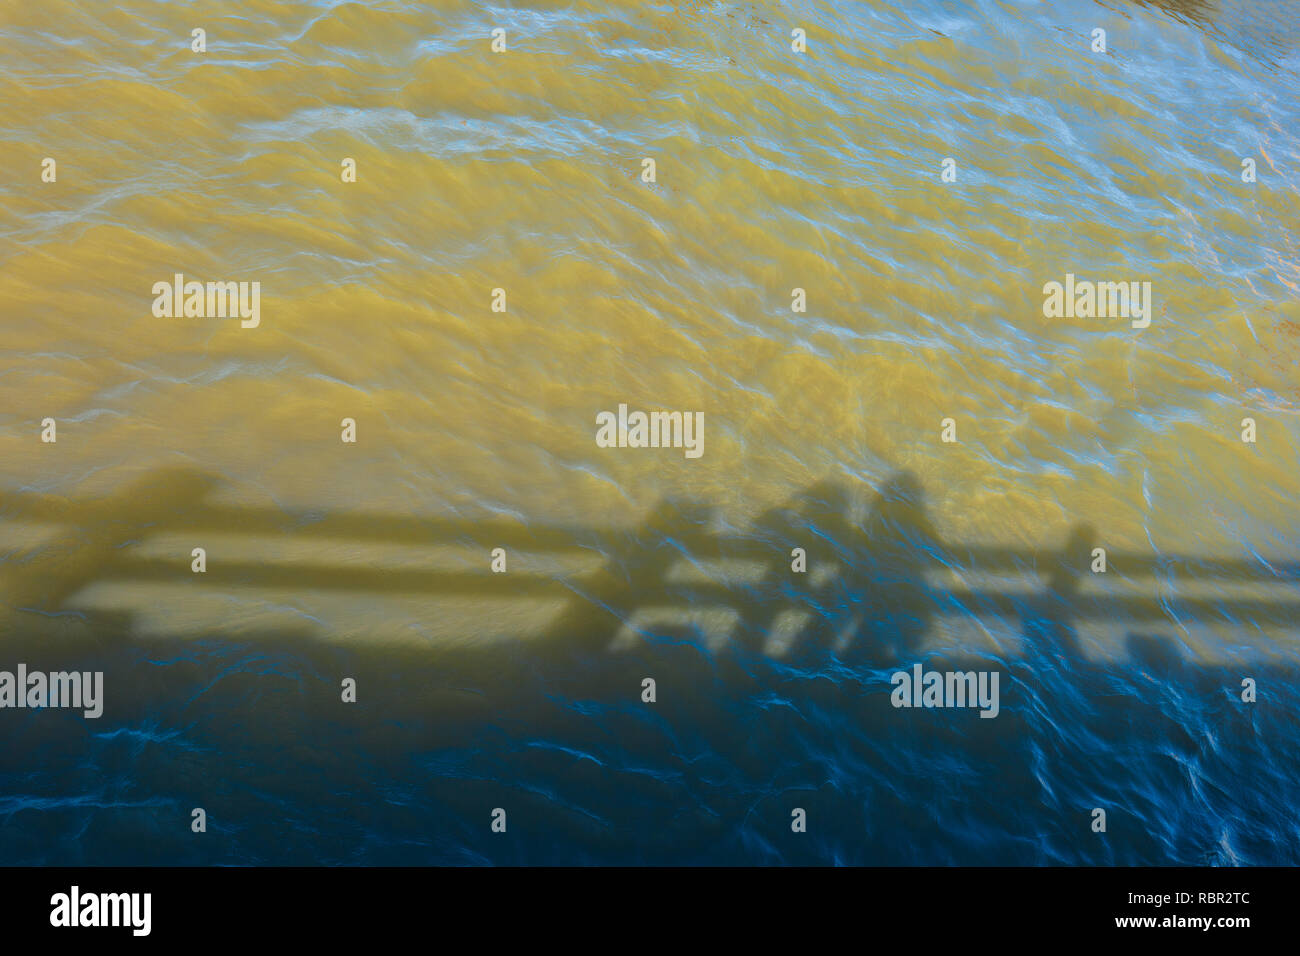 Minimalistisches Bild der Schatten im Wasser unter einem Pier am Columbia River Gorge widerspiegelt Stockfoto